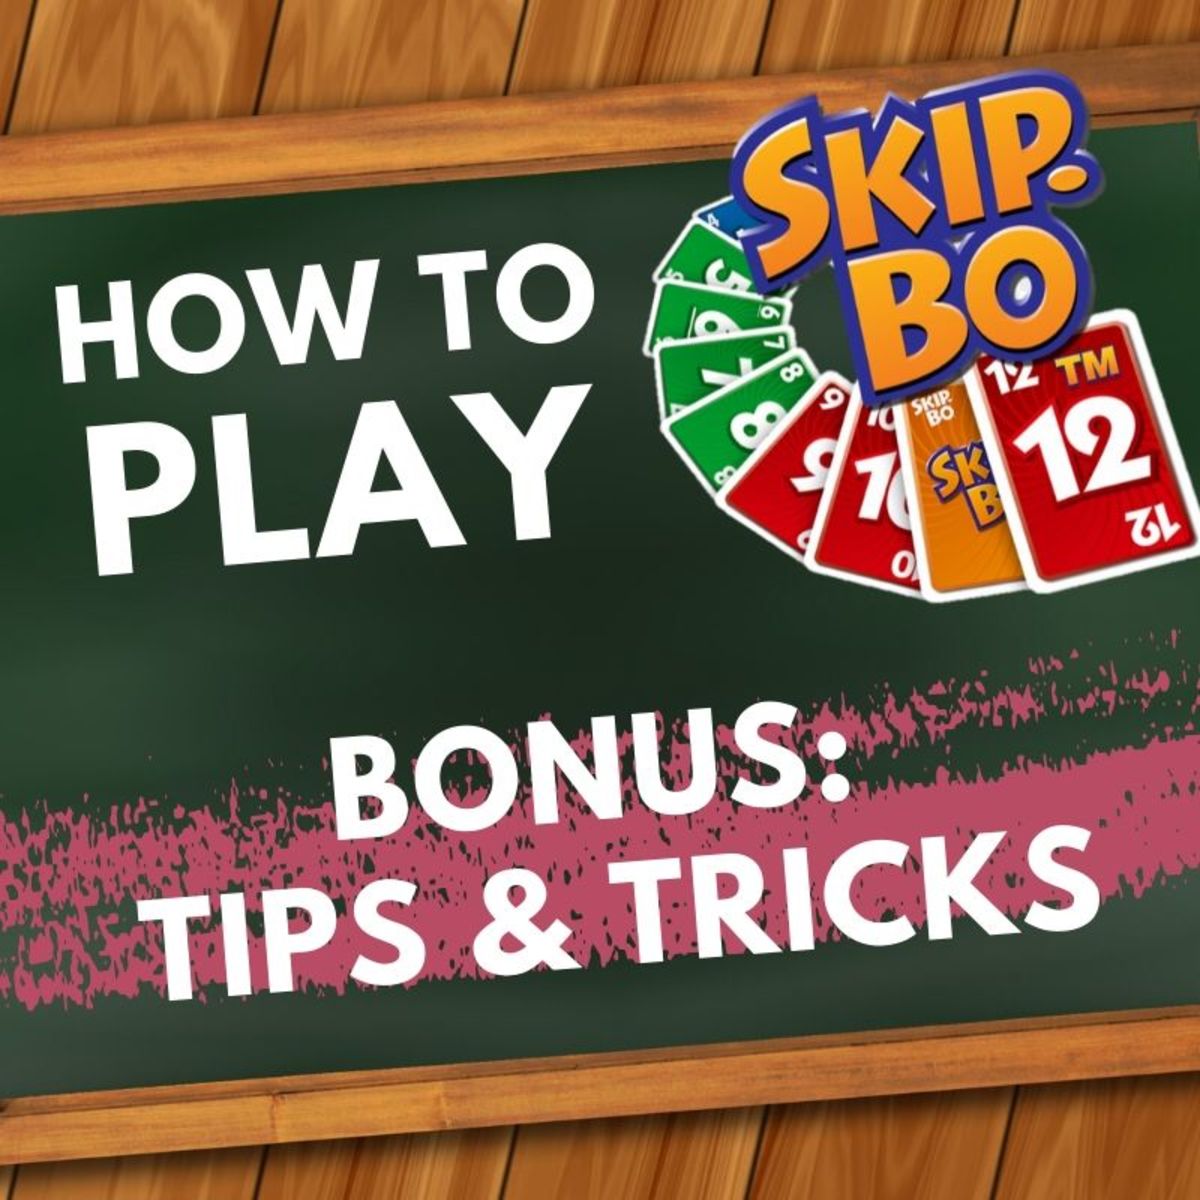 Skip Bo Tricks